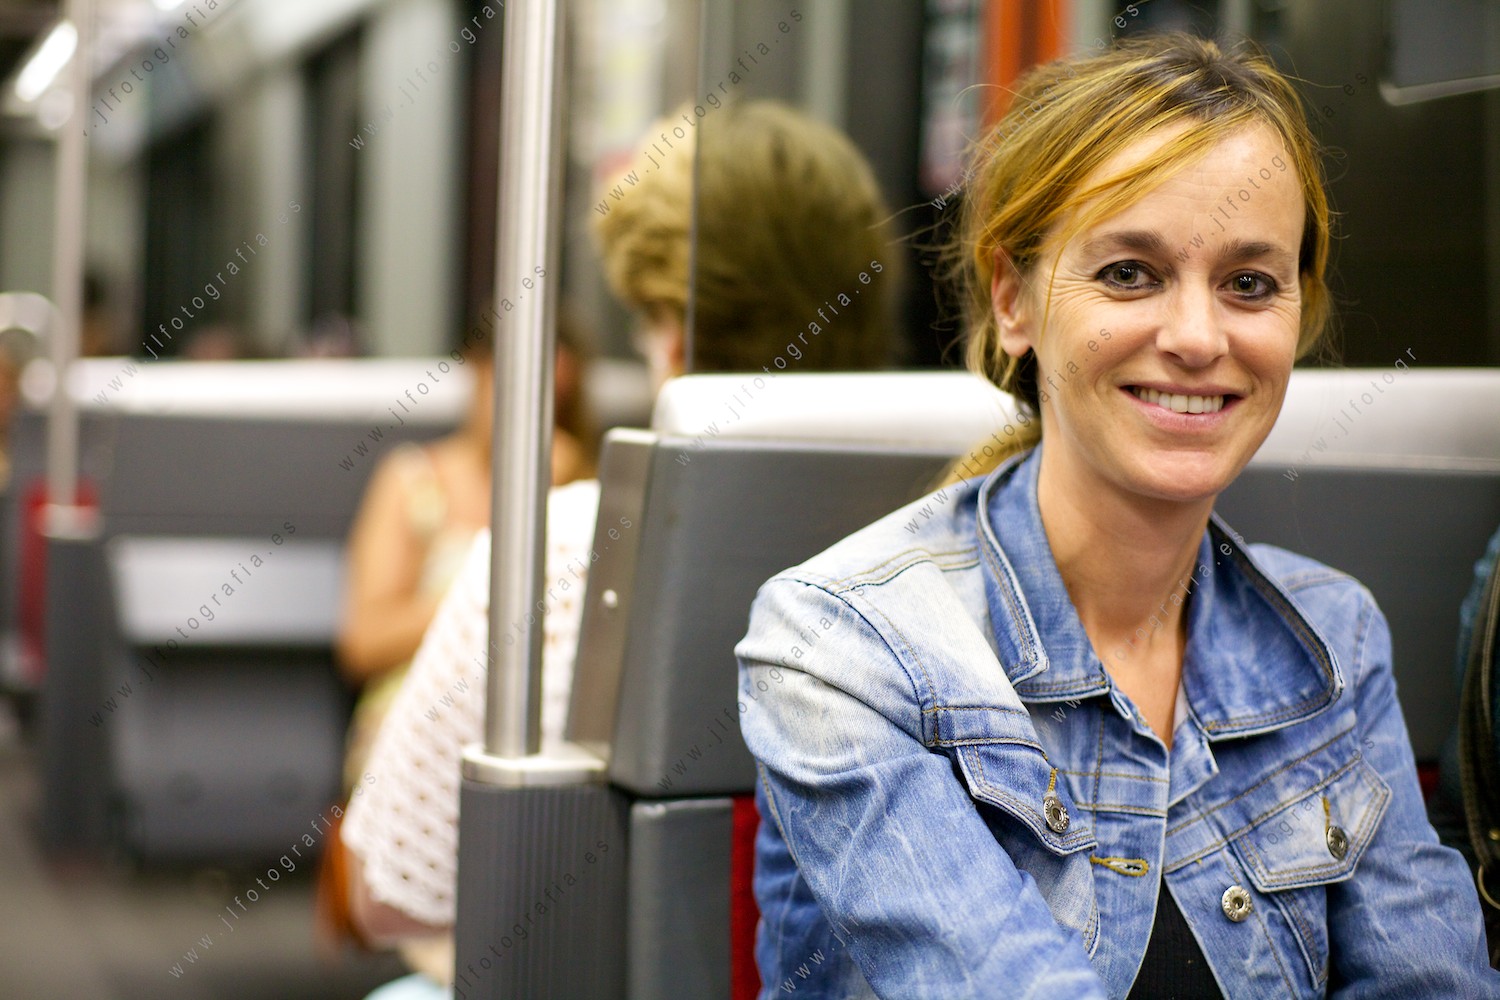 señorita de preciosa mirada y sonrisa en el metro Bilbao